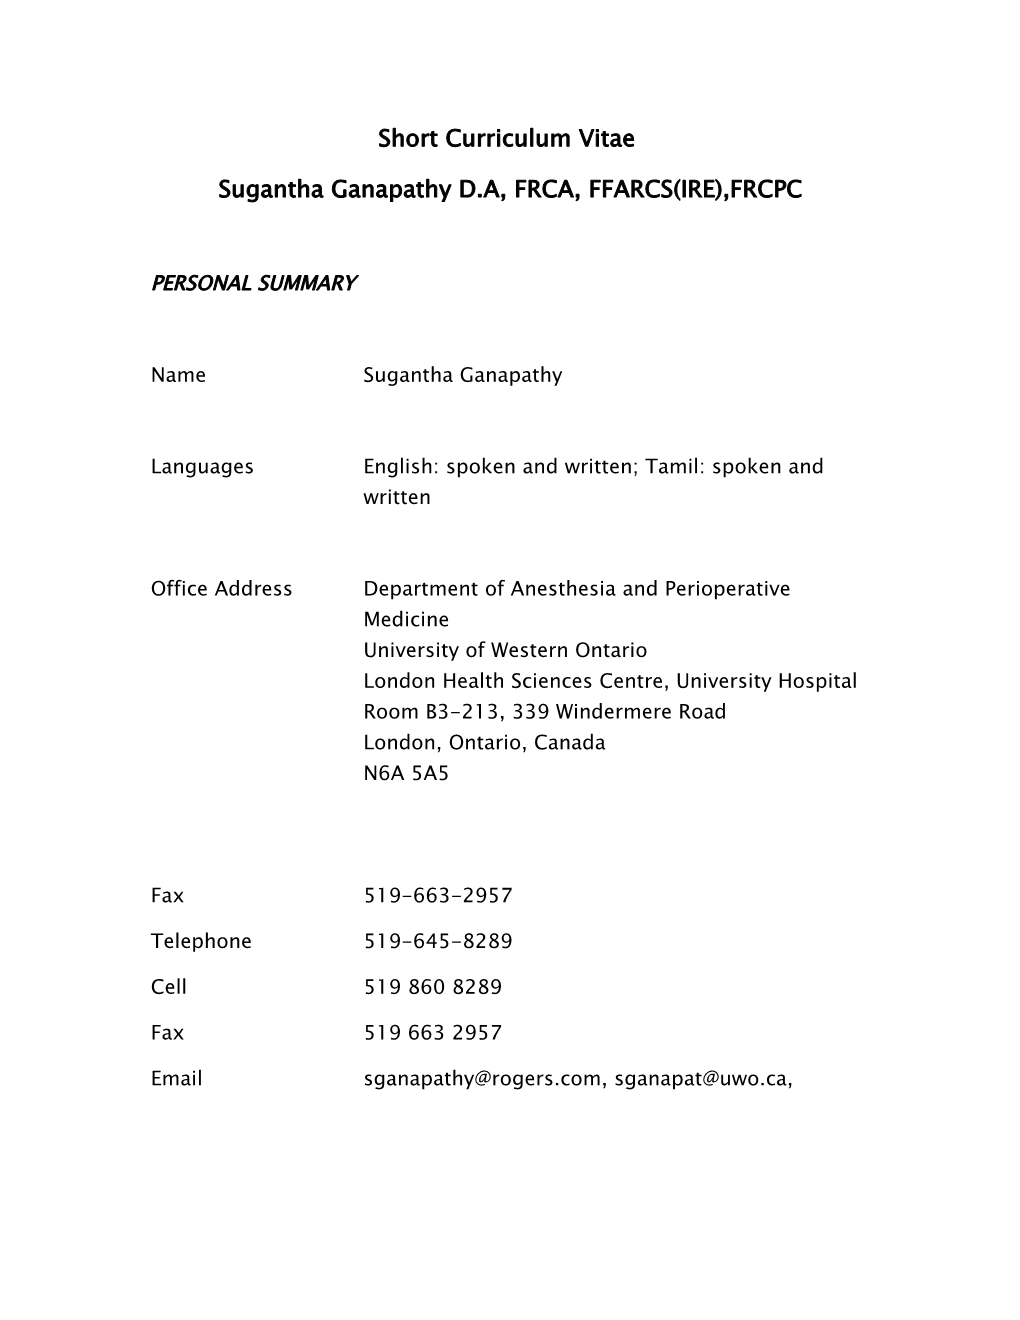 Sugantha Ganapathy D.A, FRCA, FFARCS(IRE),FRCPC